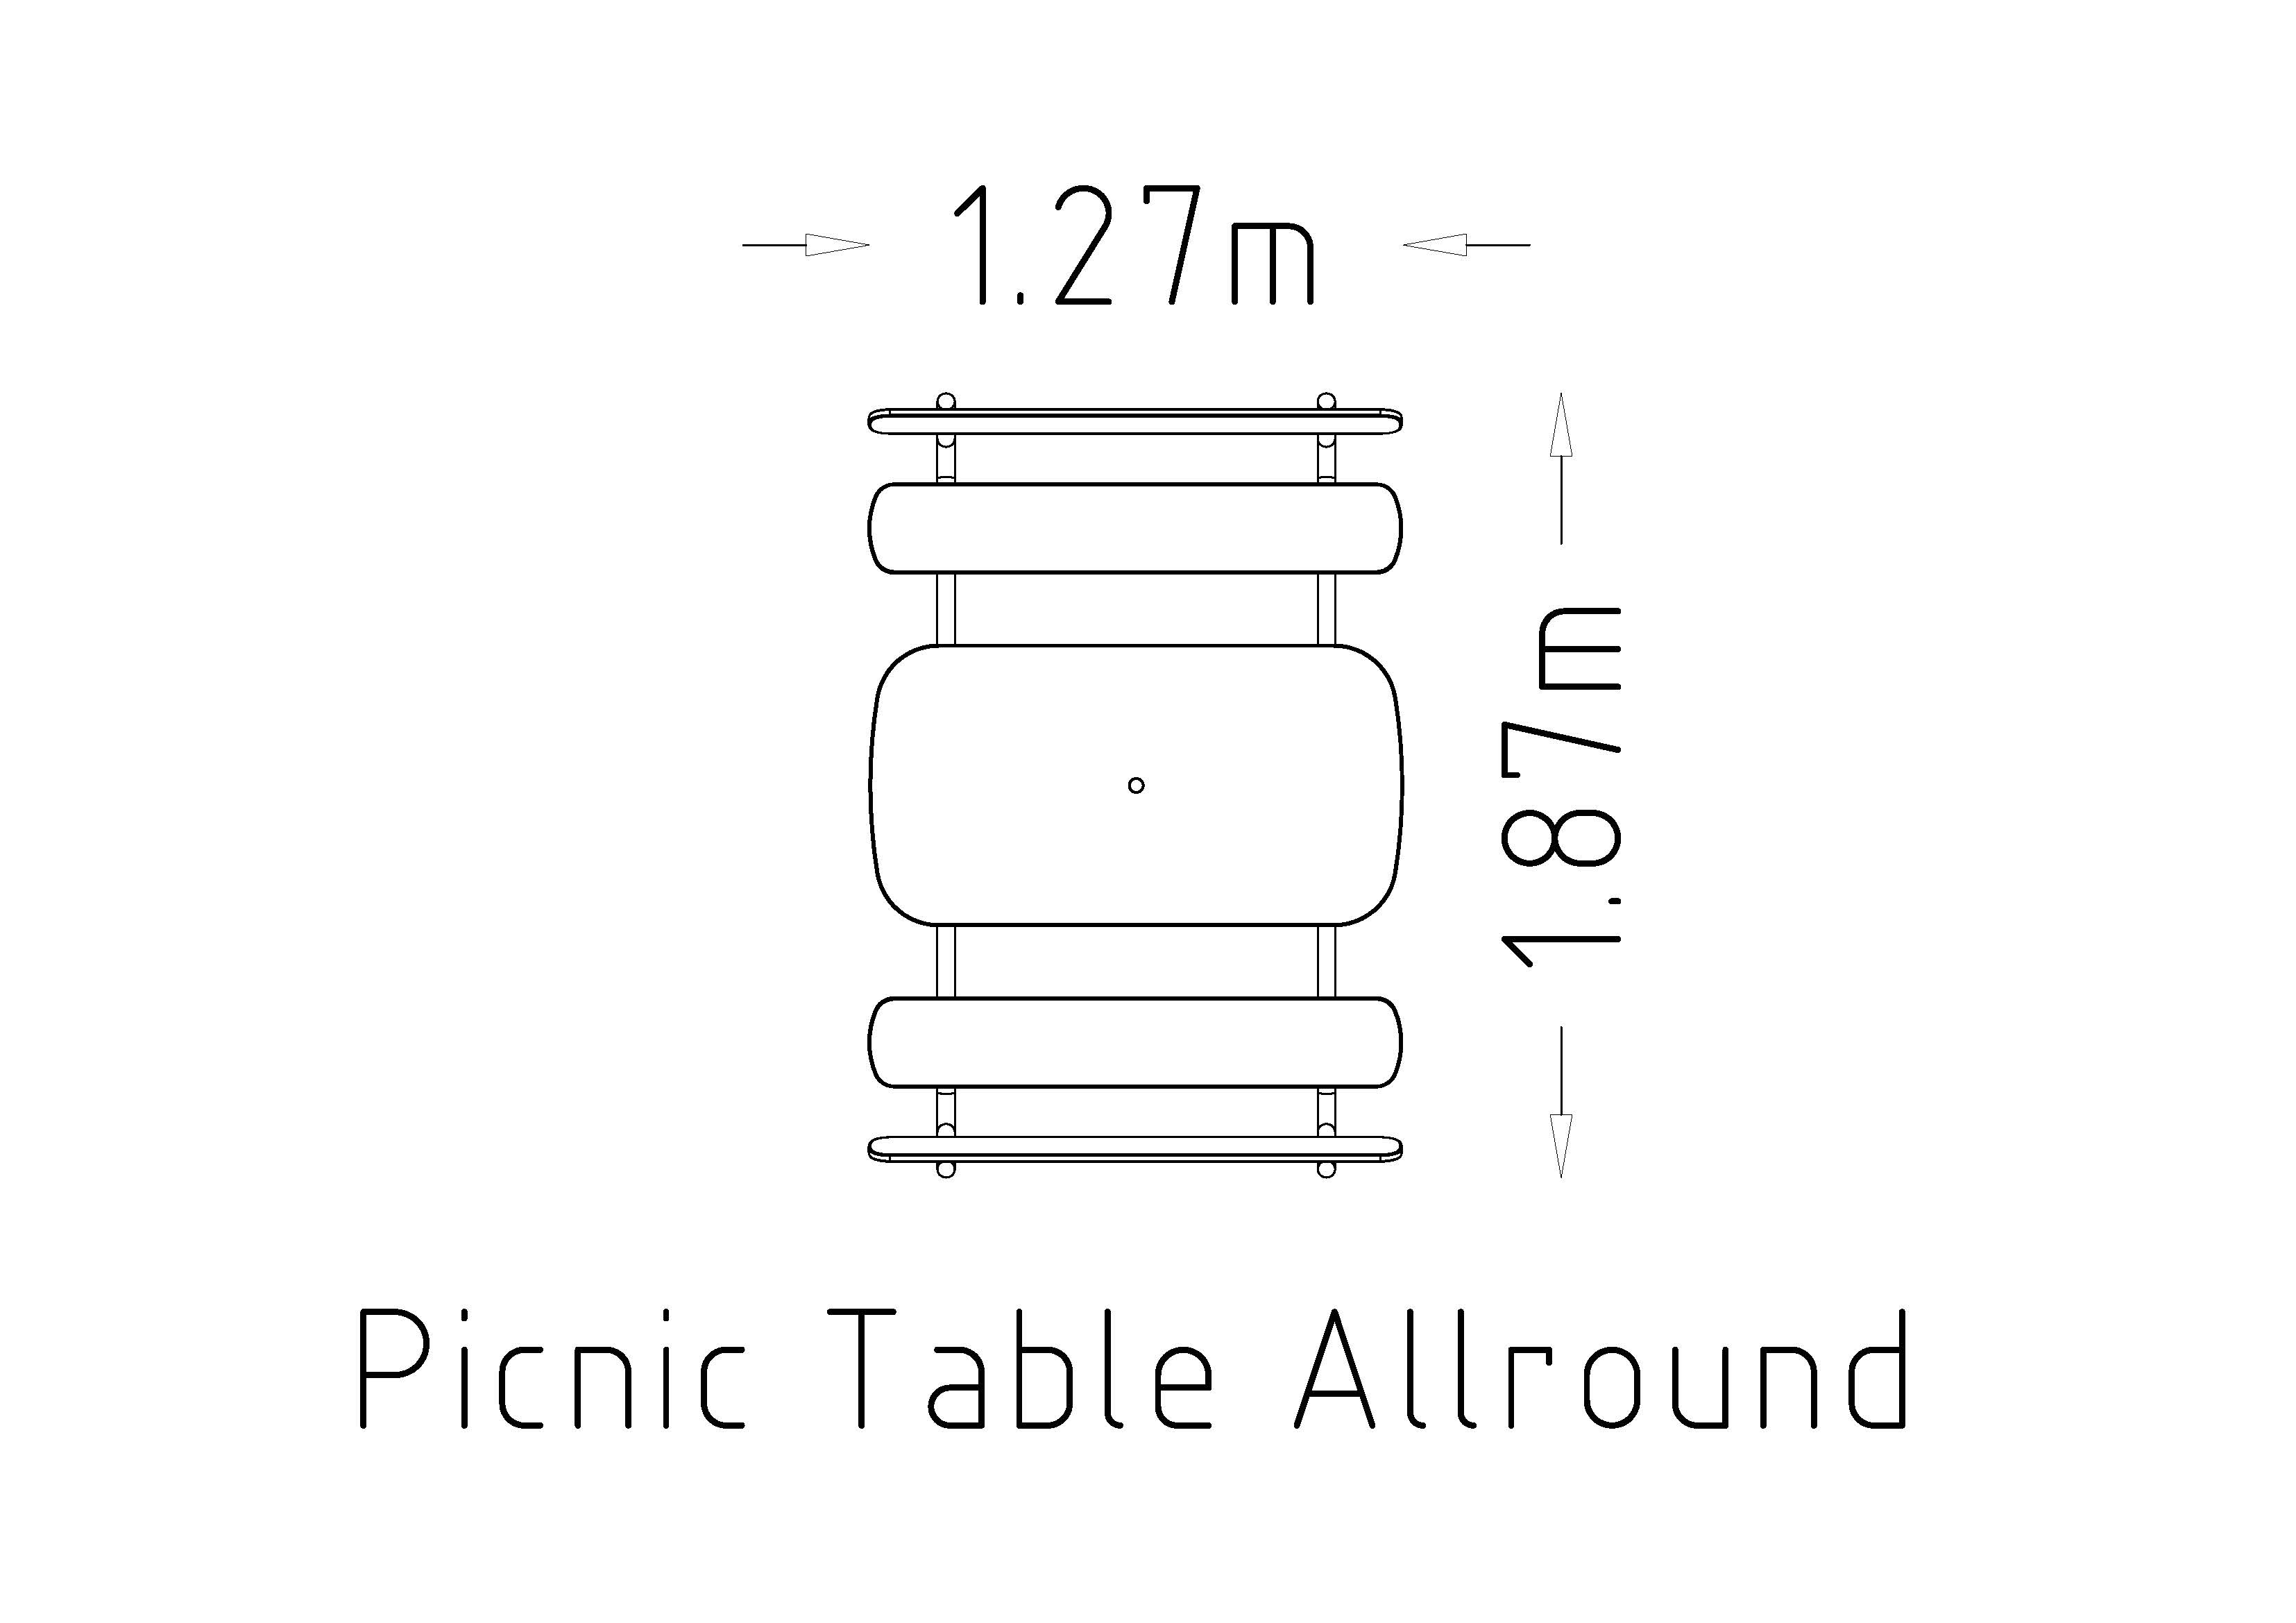 Piknikbord Allround